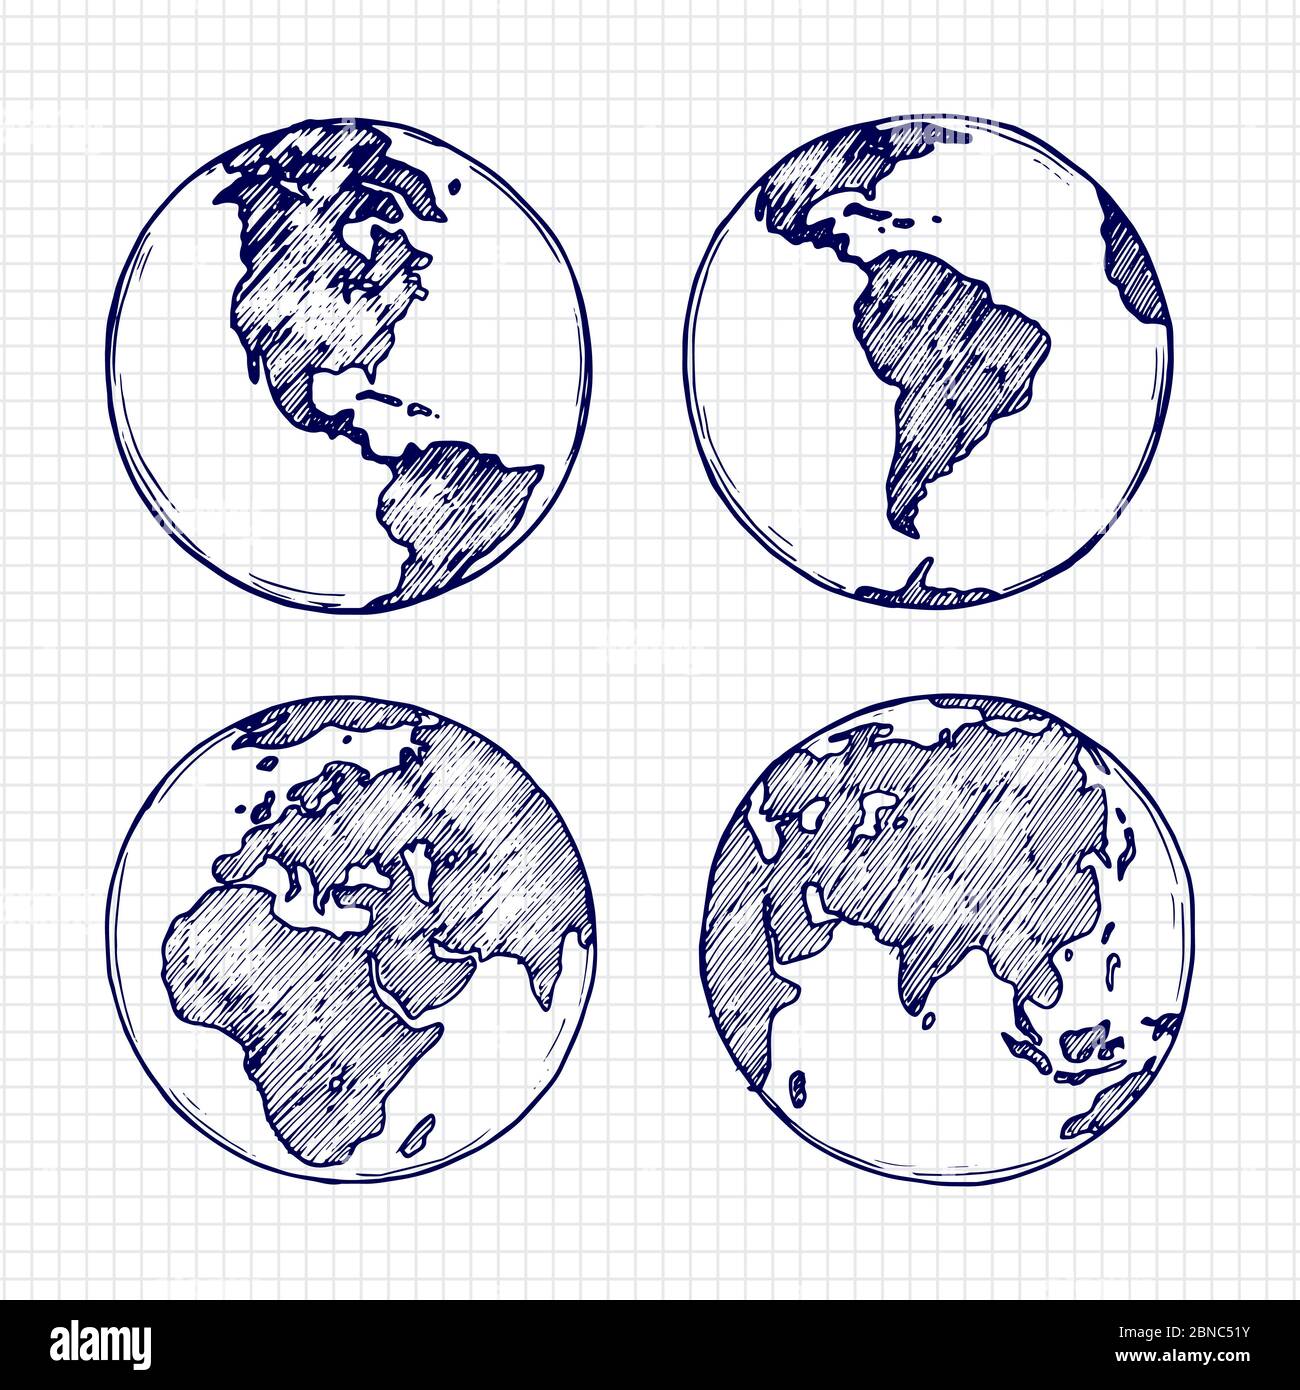 Globus Skizze. Handgezeichneter Erdplanet mit Kontinente Vektorgrafik isoliert auf weißem Hintergrund Stock Vektor